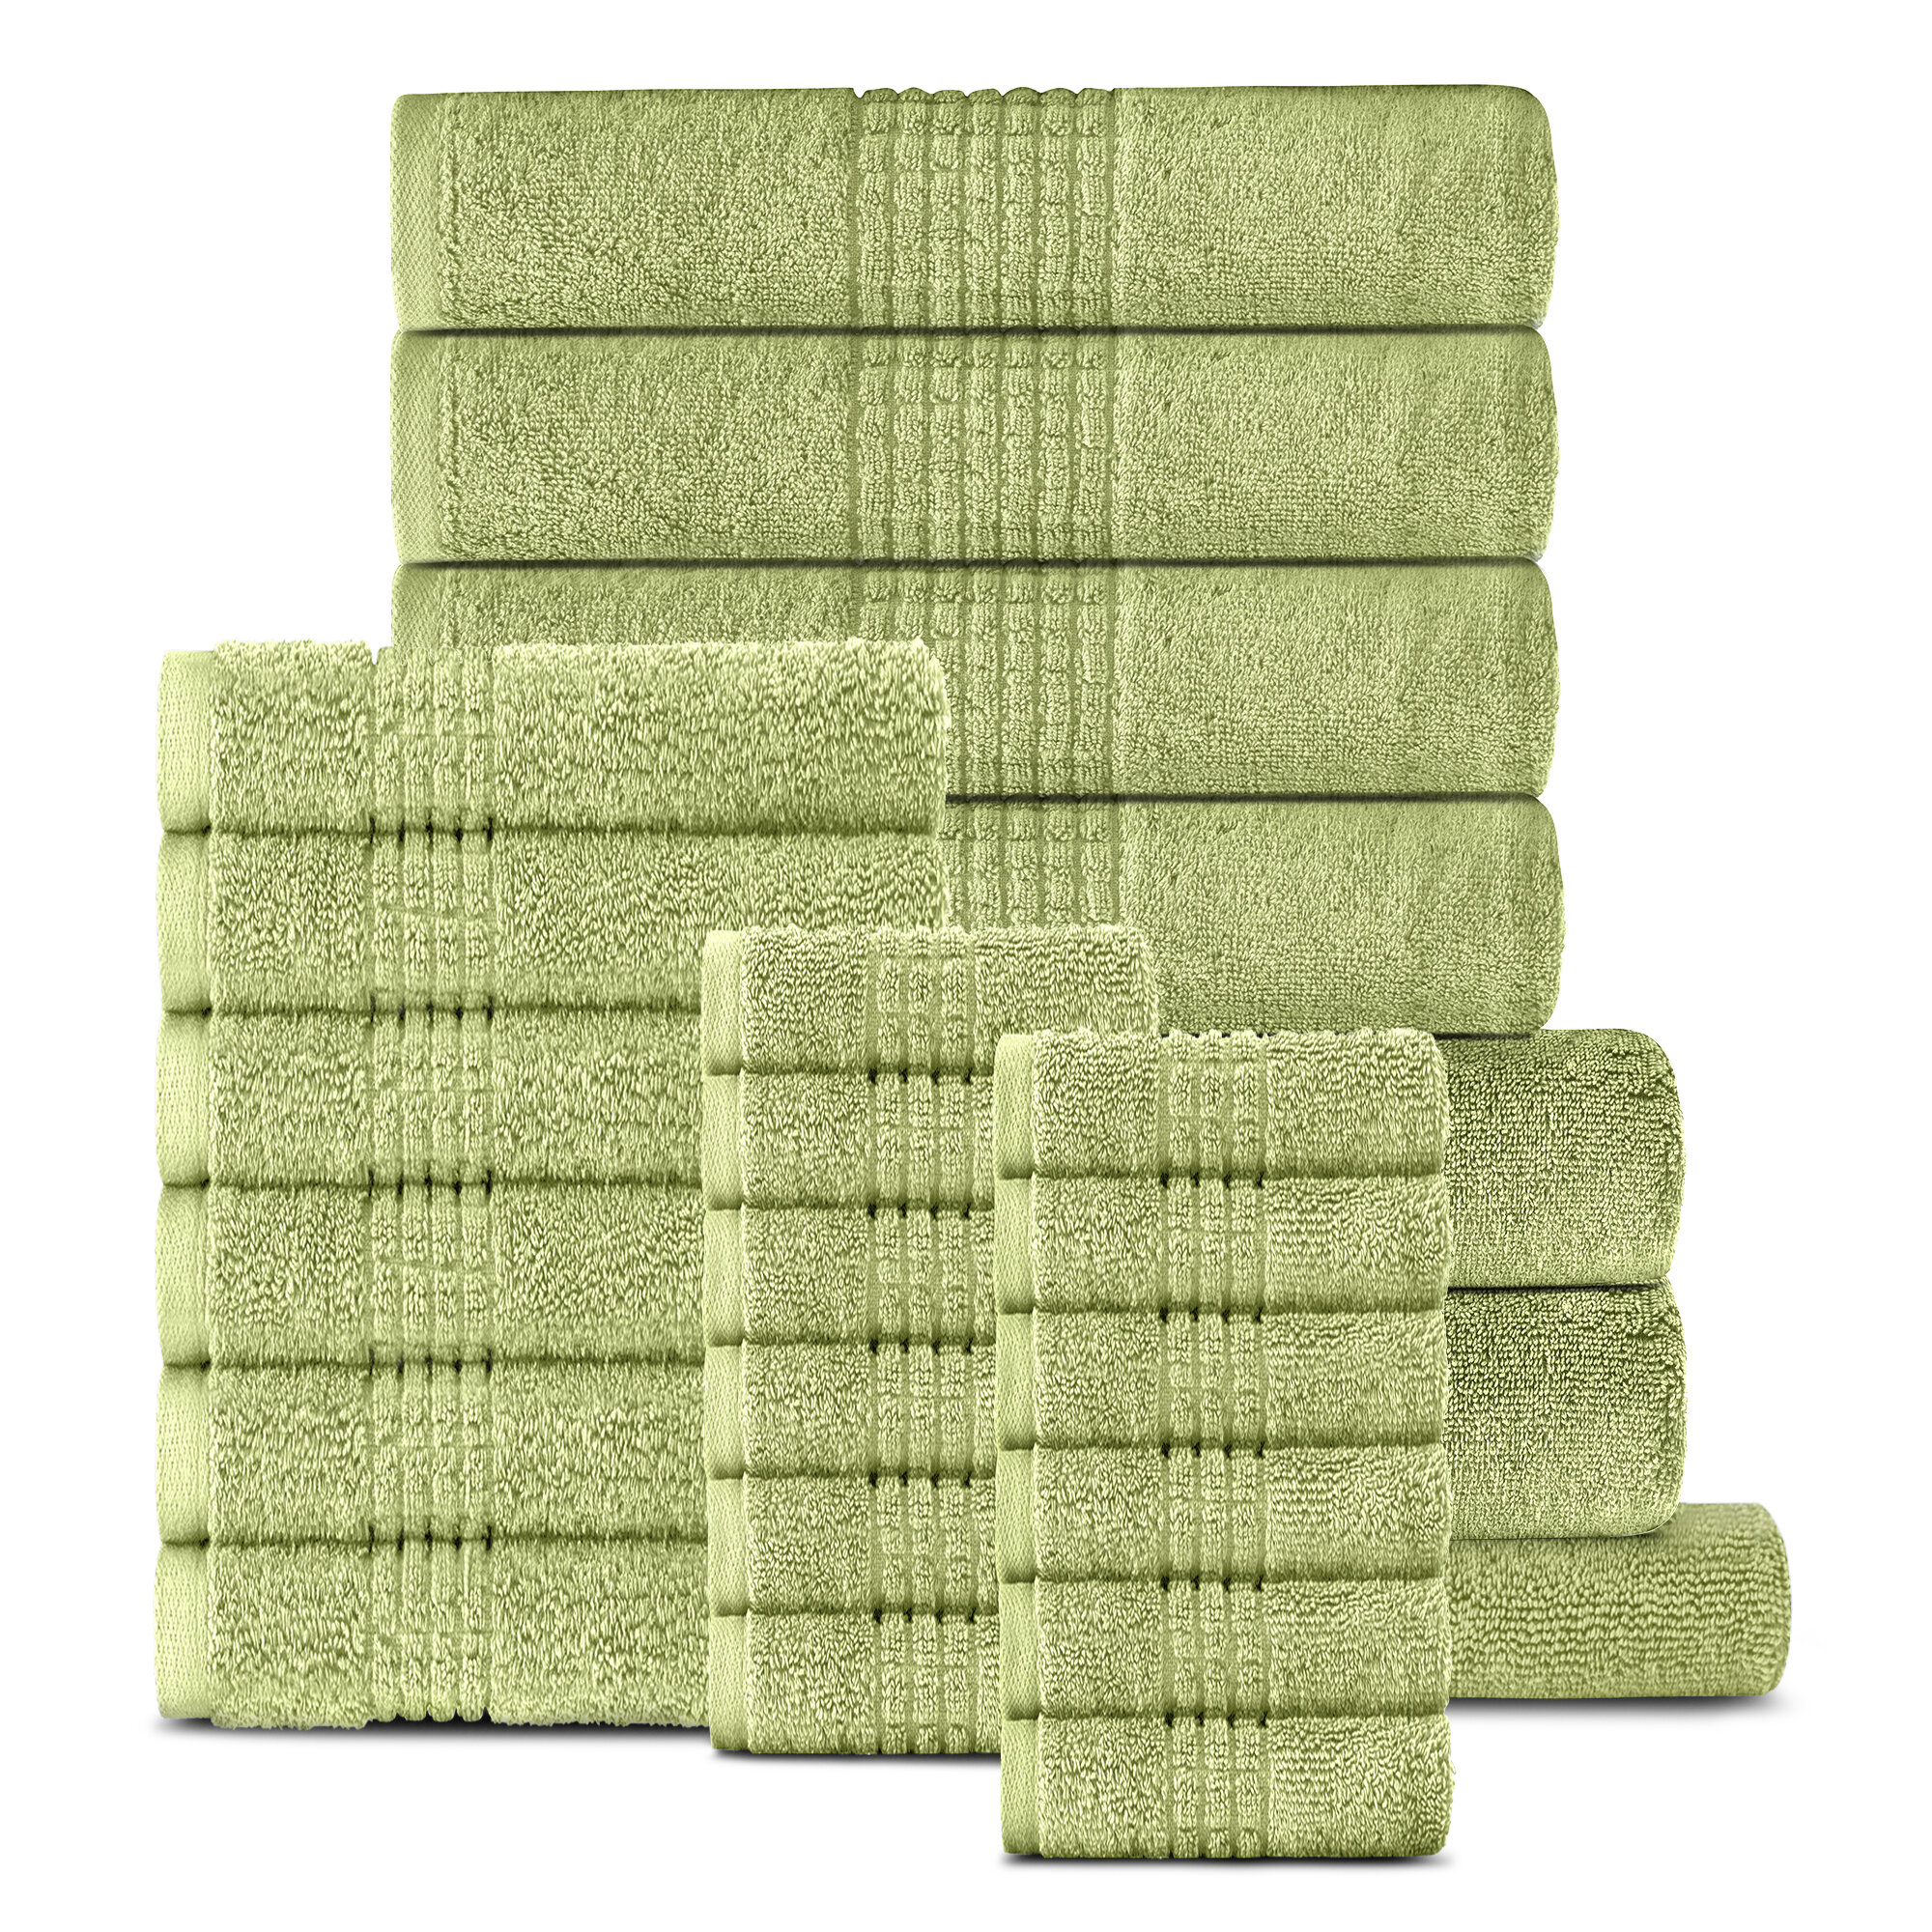 https://assets.wfcdn.com/im/11571527/compr-r85/1612/161202285/25-piece-egyptian-quality-cotton-bath-sheet-towel-set.jpg